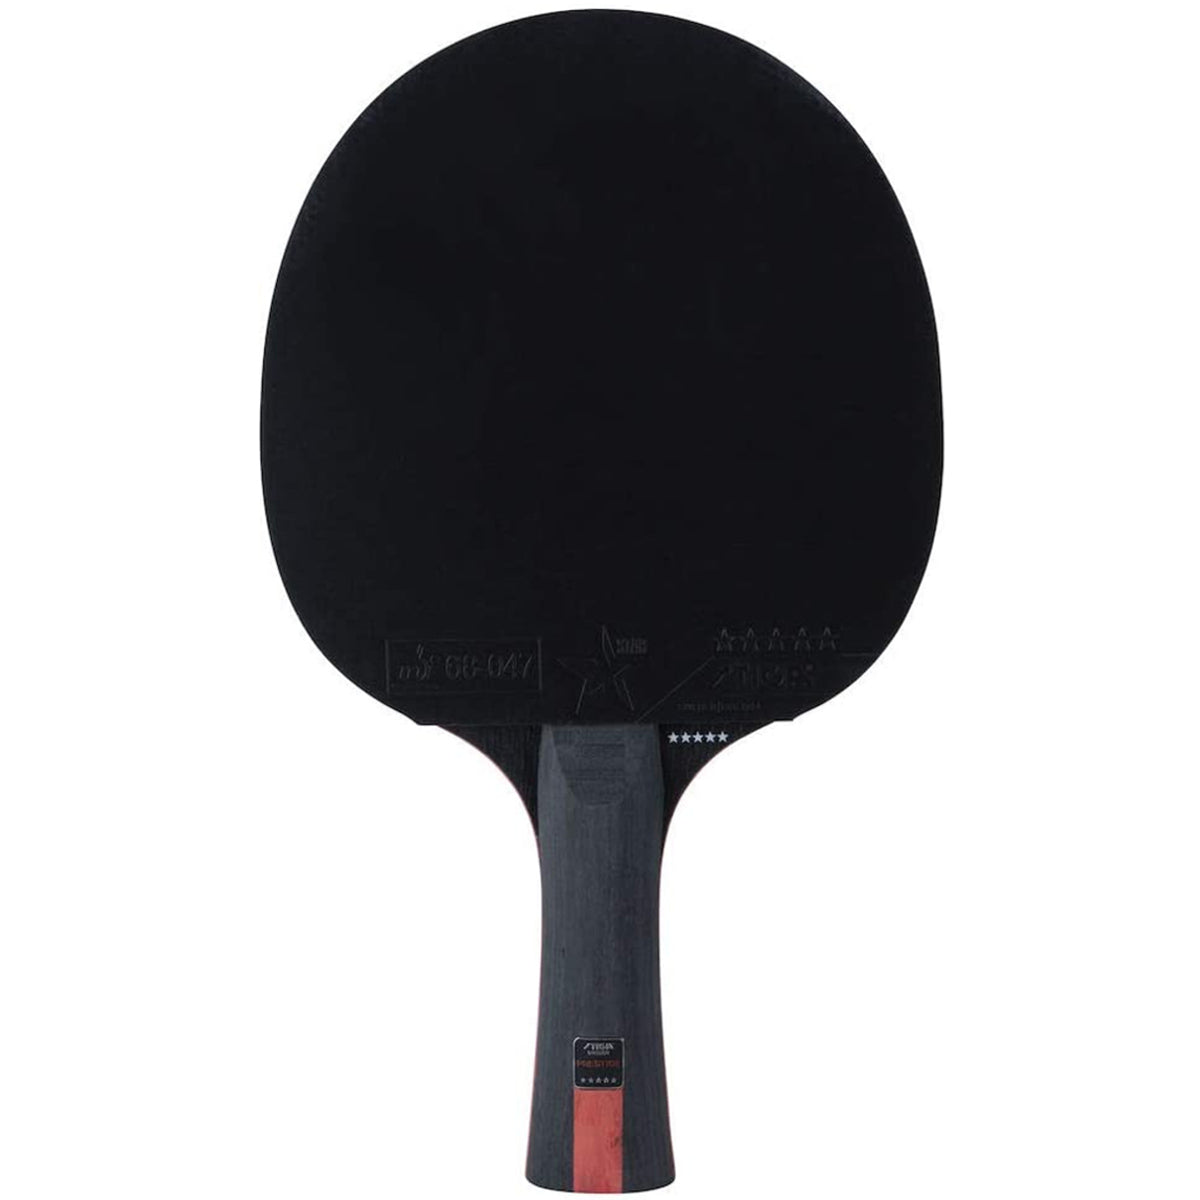 STIGA Prestige Carbon 5-Star Table Tennis Bat